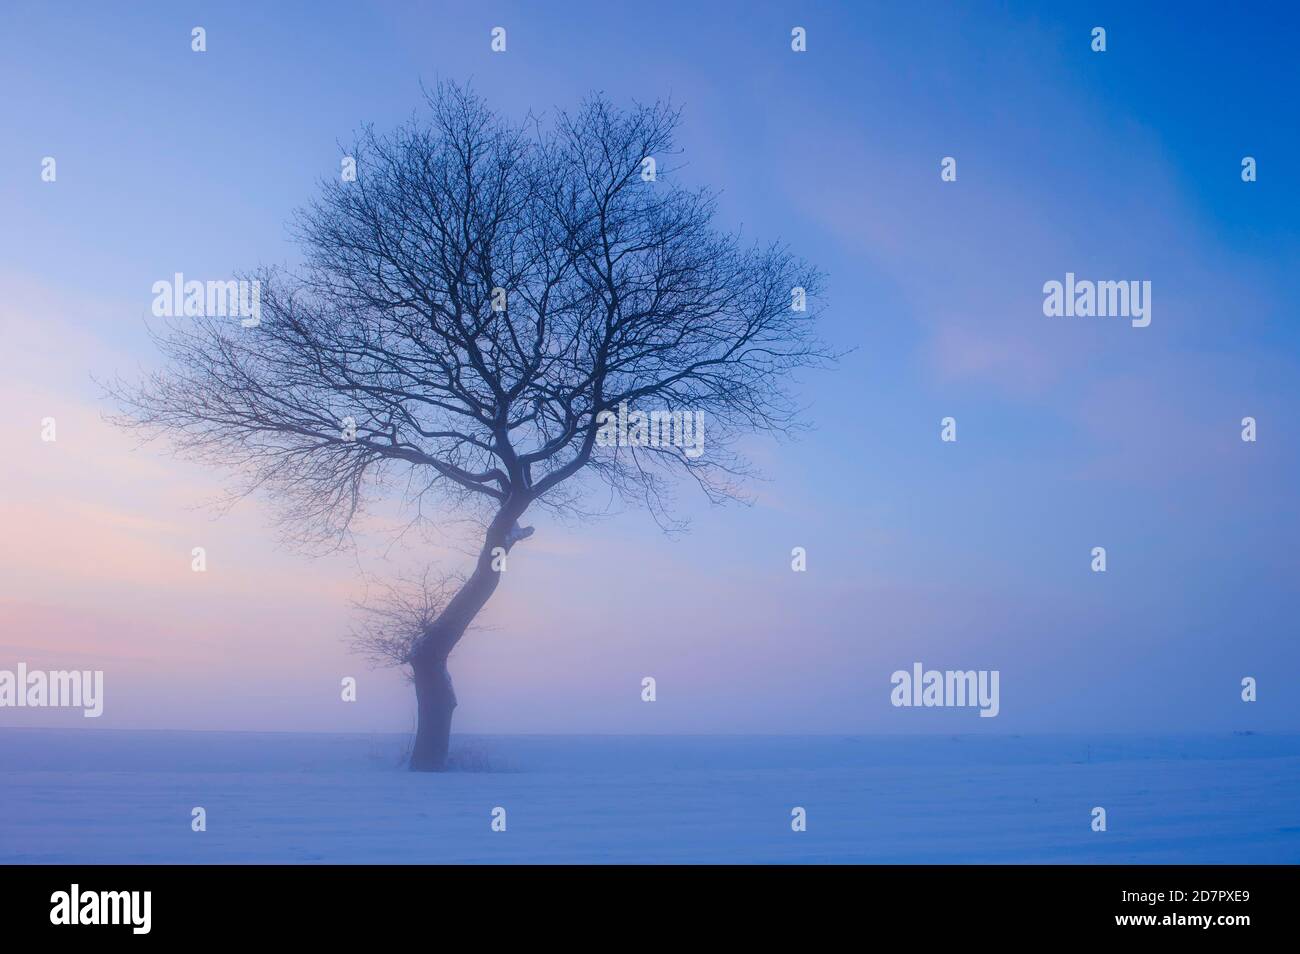 Baum in melancholischer, winterlicher Landschaft, blaue Stunde, Winter, Nebel, Vechta, Niedersachsen, Deutschland Stockfoto